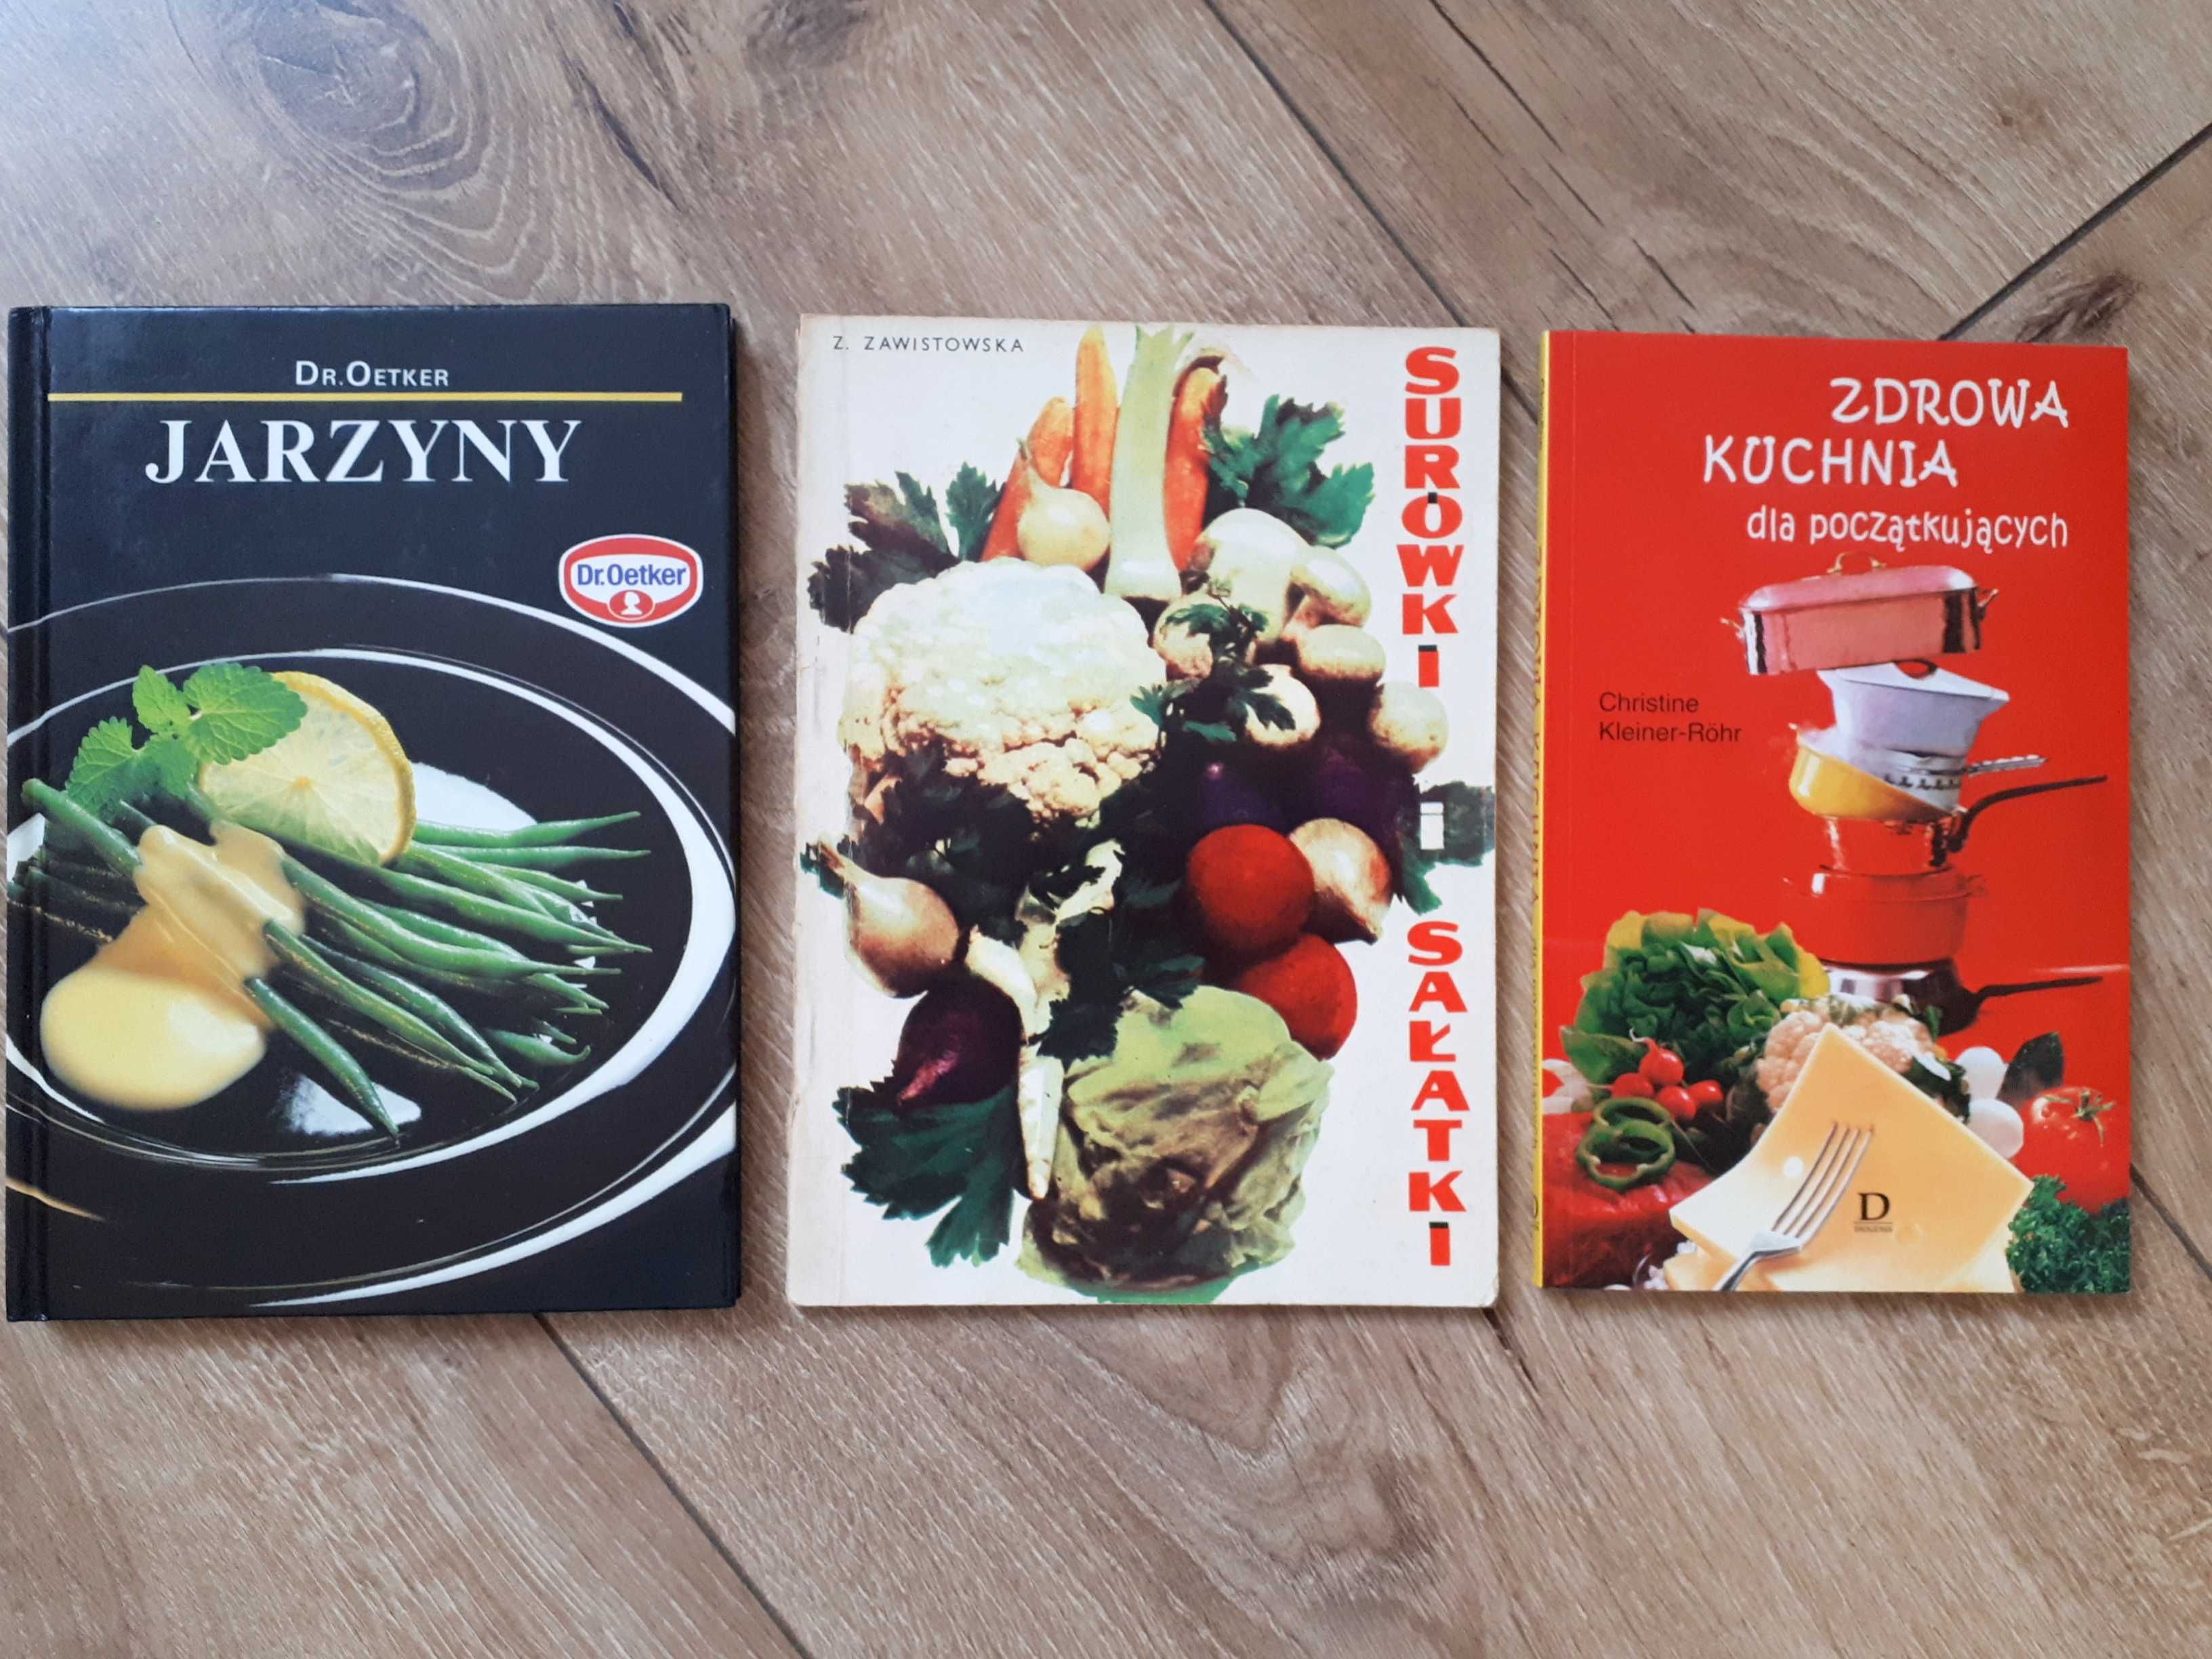 3 książki kucharskie jarzyny zdrowa kuchnia sałatki surówki